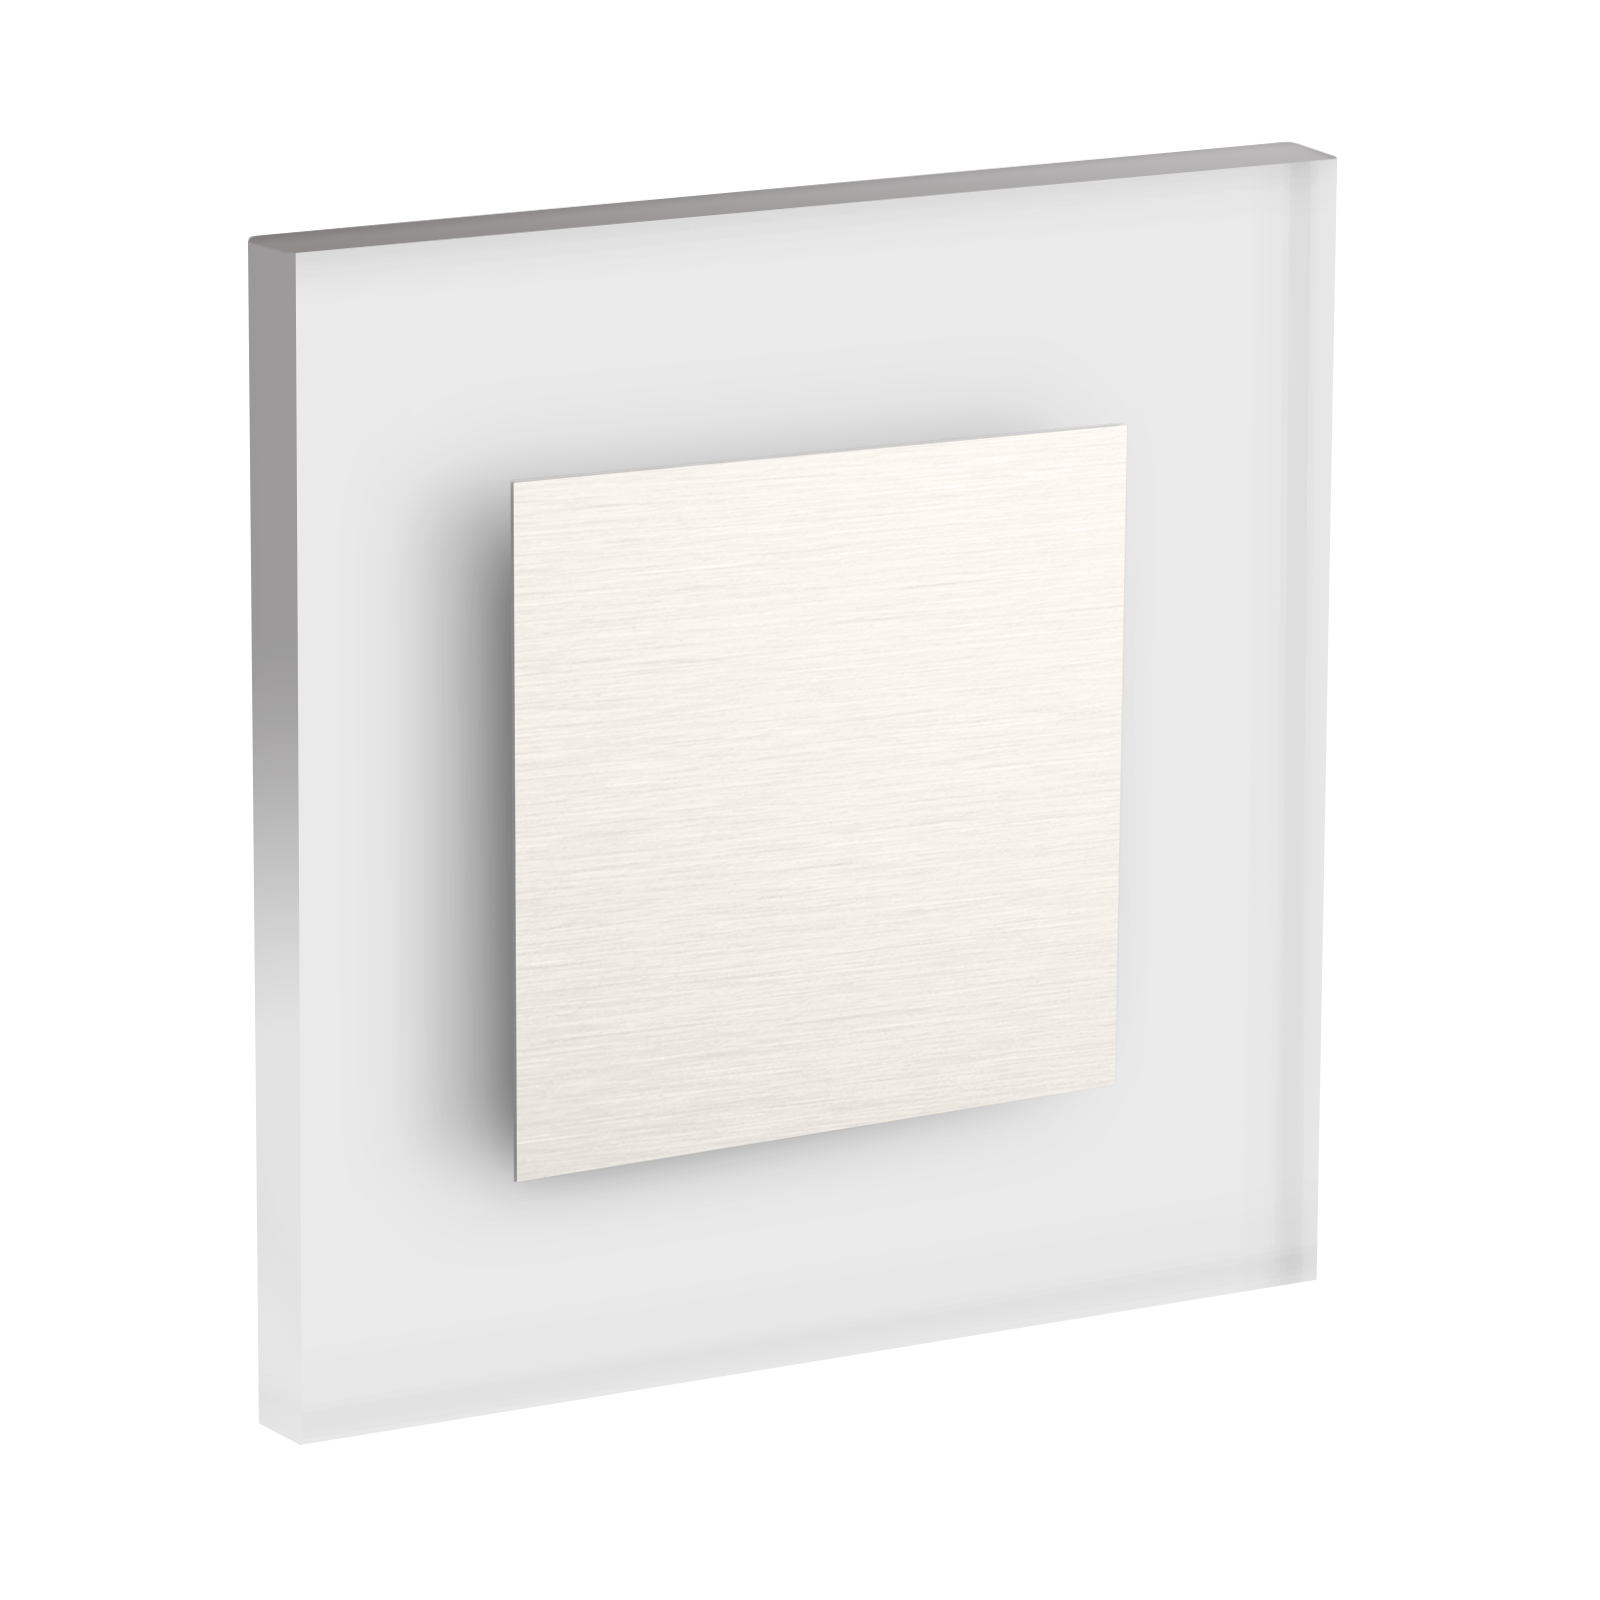 LED Wandeinbaustrahler Treppenlicht Wandeinbauleuchte warmweiß flach Satinglas quadratisch WB1 12V